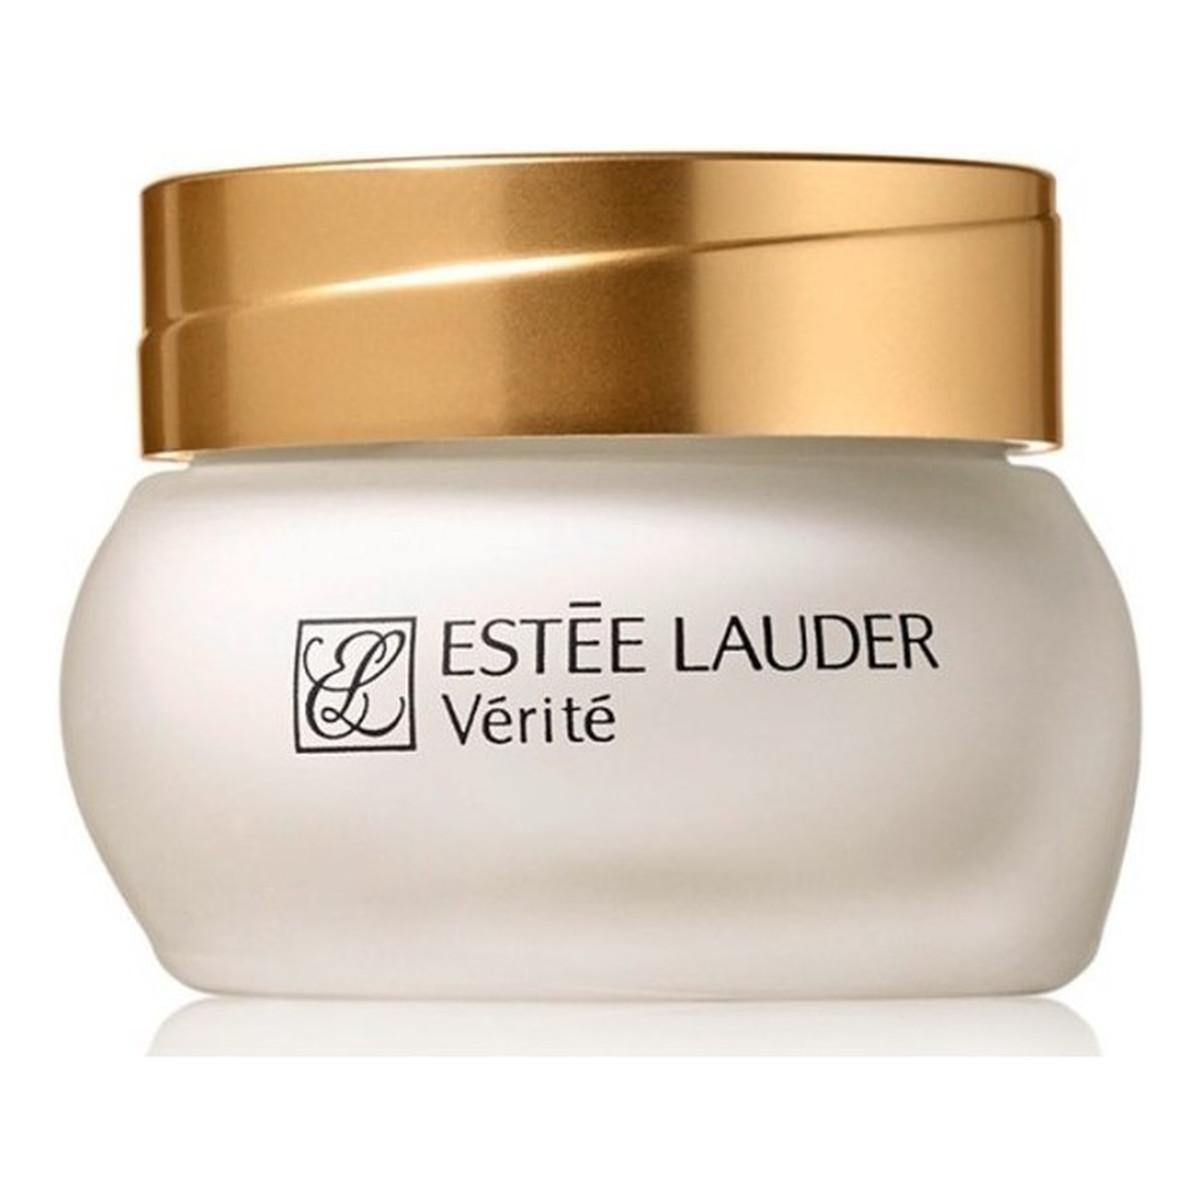 Estee Lauder Verite Moisture Relief Creme Regenerujący krem nawilżający do skóry wrażliwej 50ml